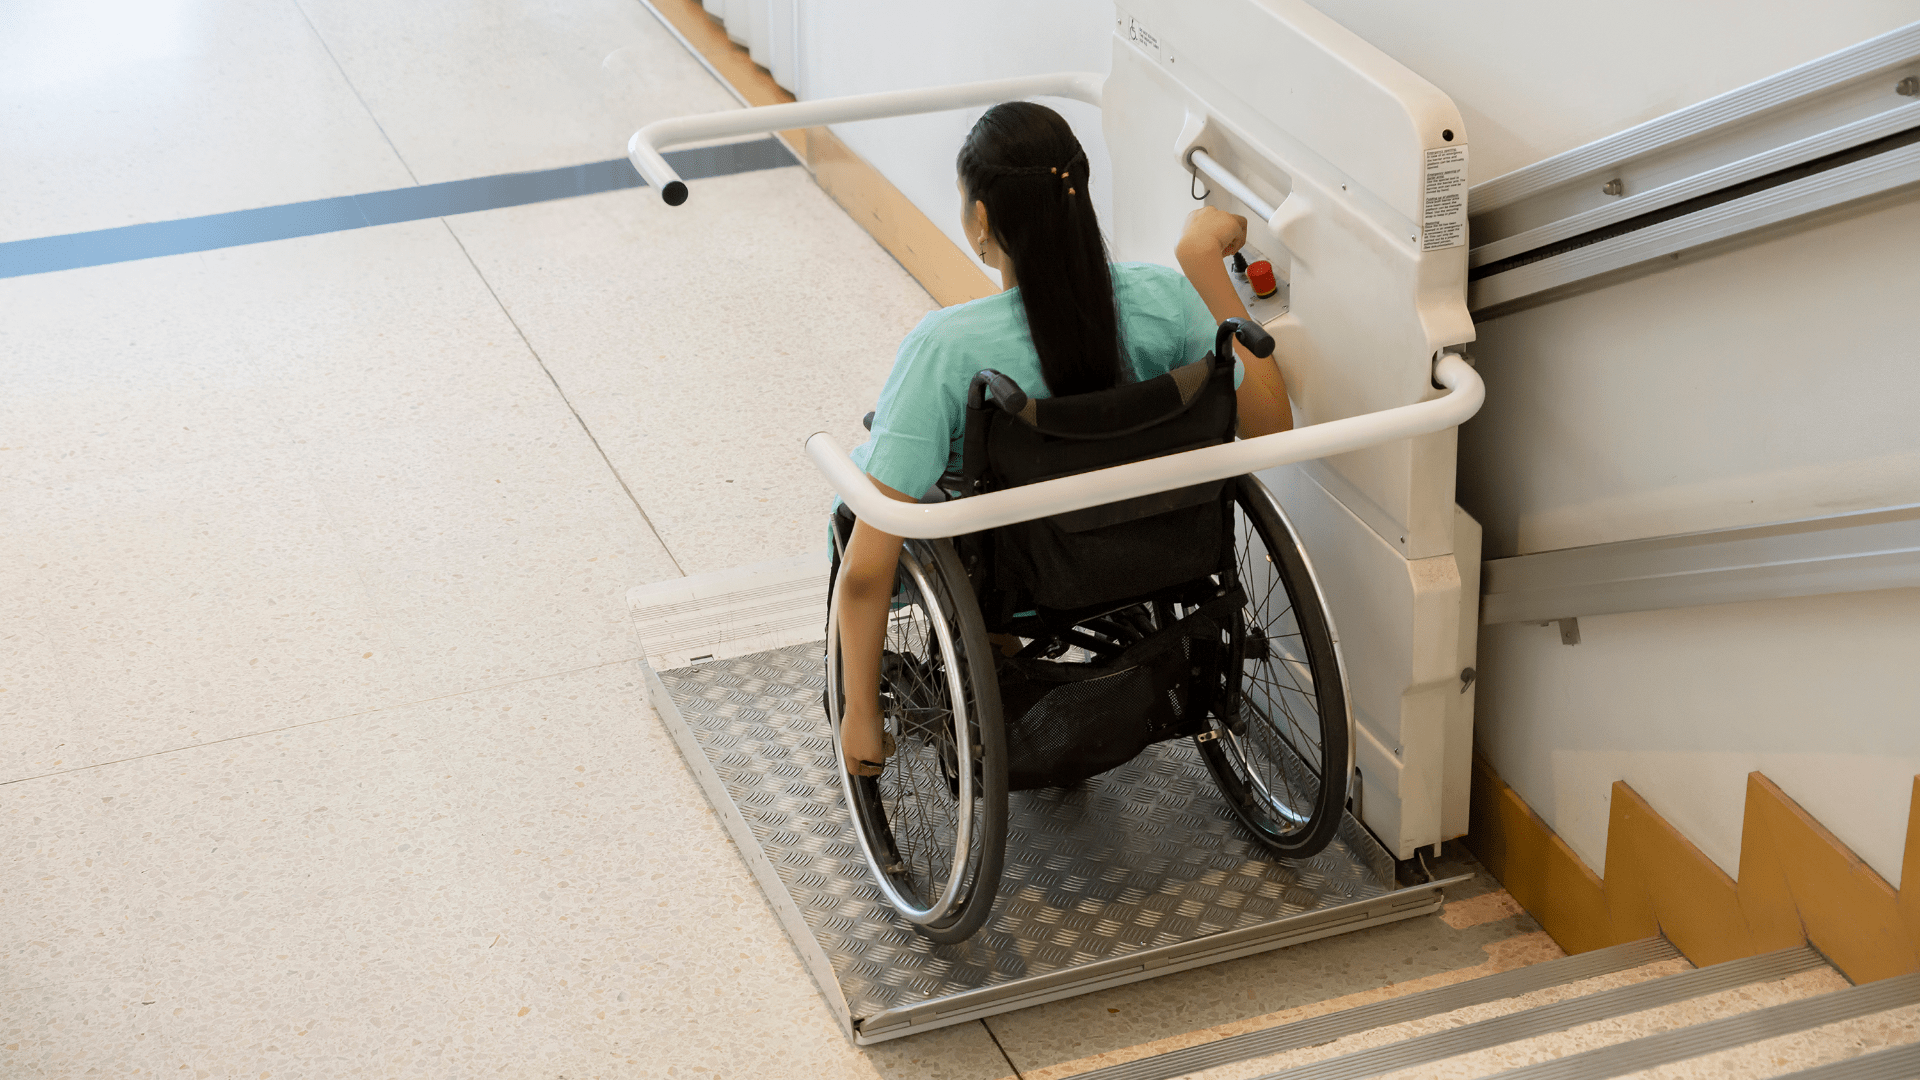 На госуслугах МО сократится число отказов на выплату для реабилитации инвалидов